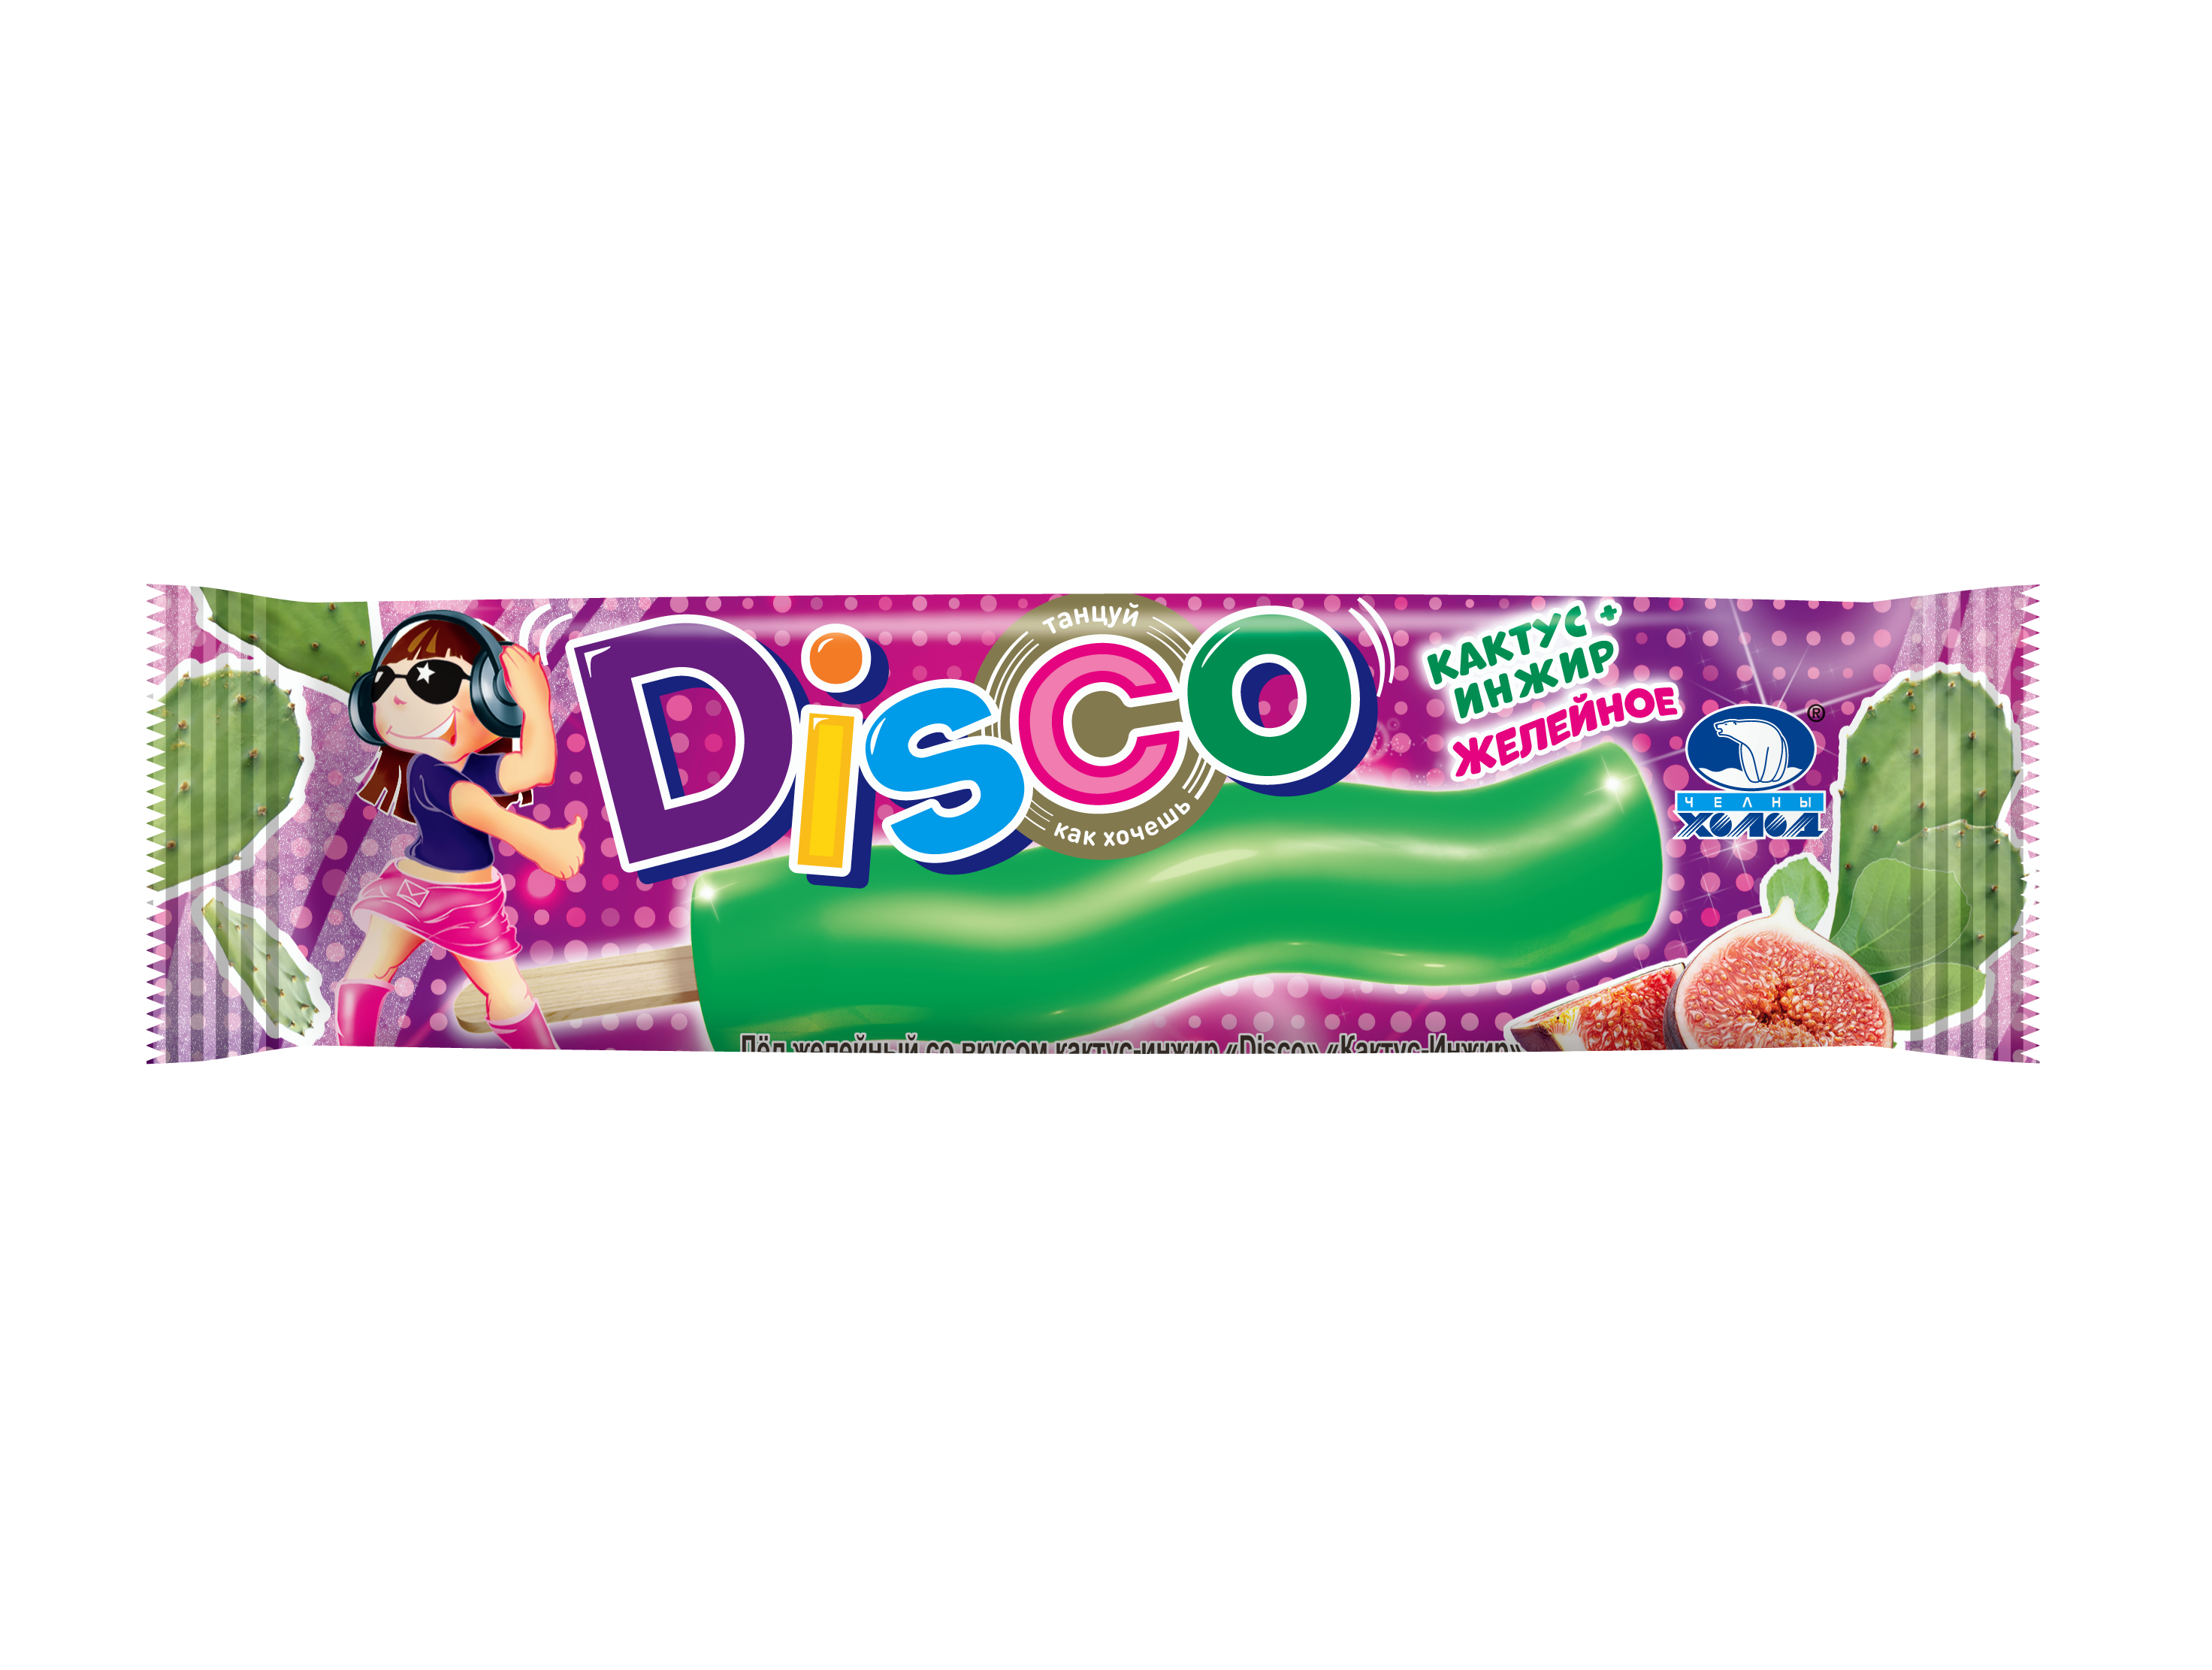      - "Disco" 60   888 